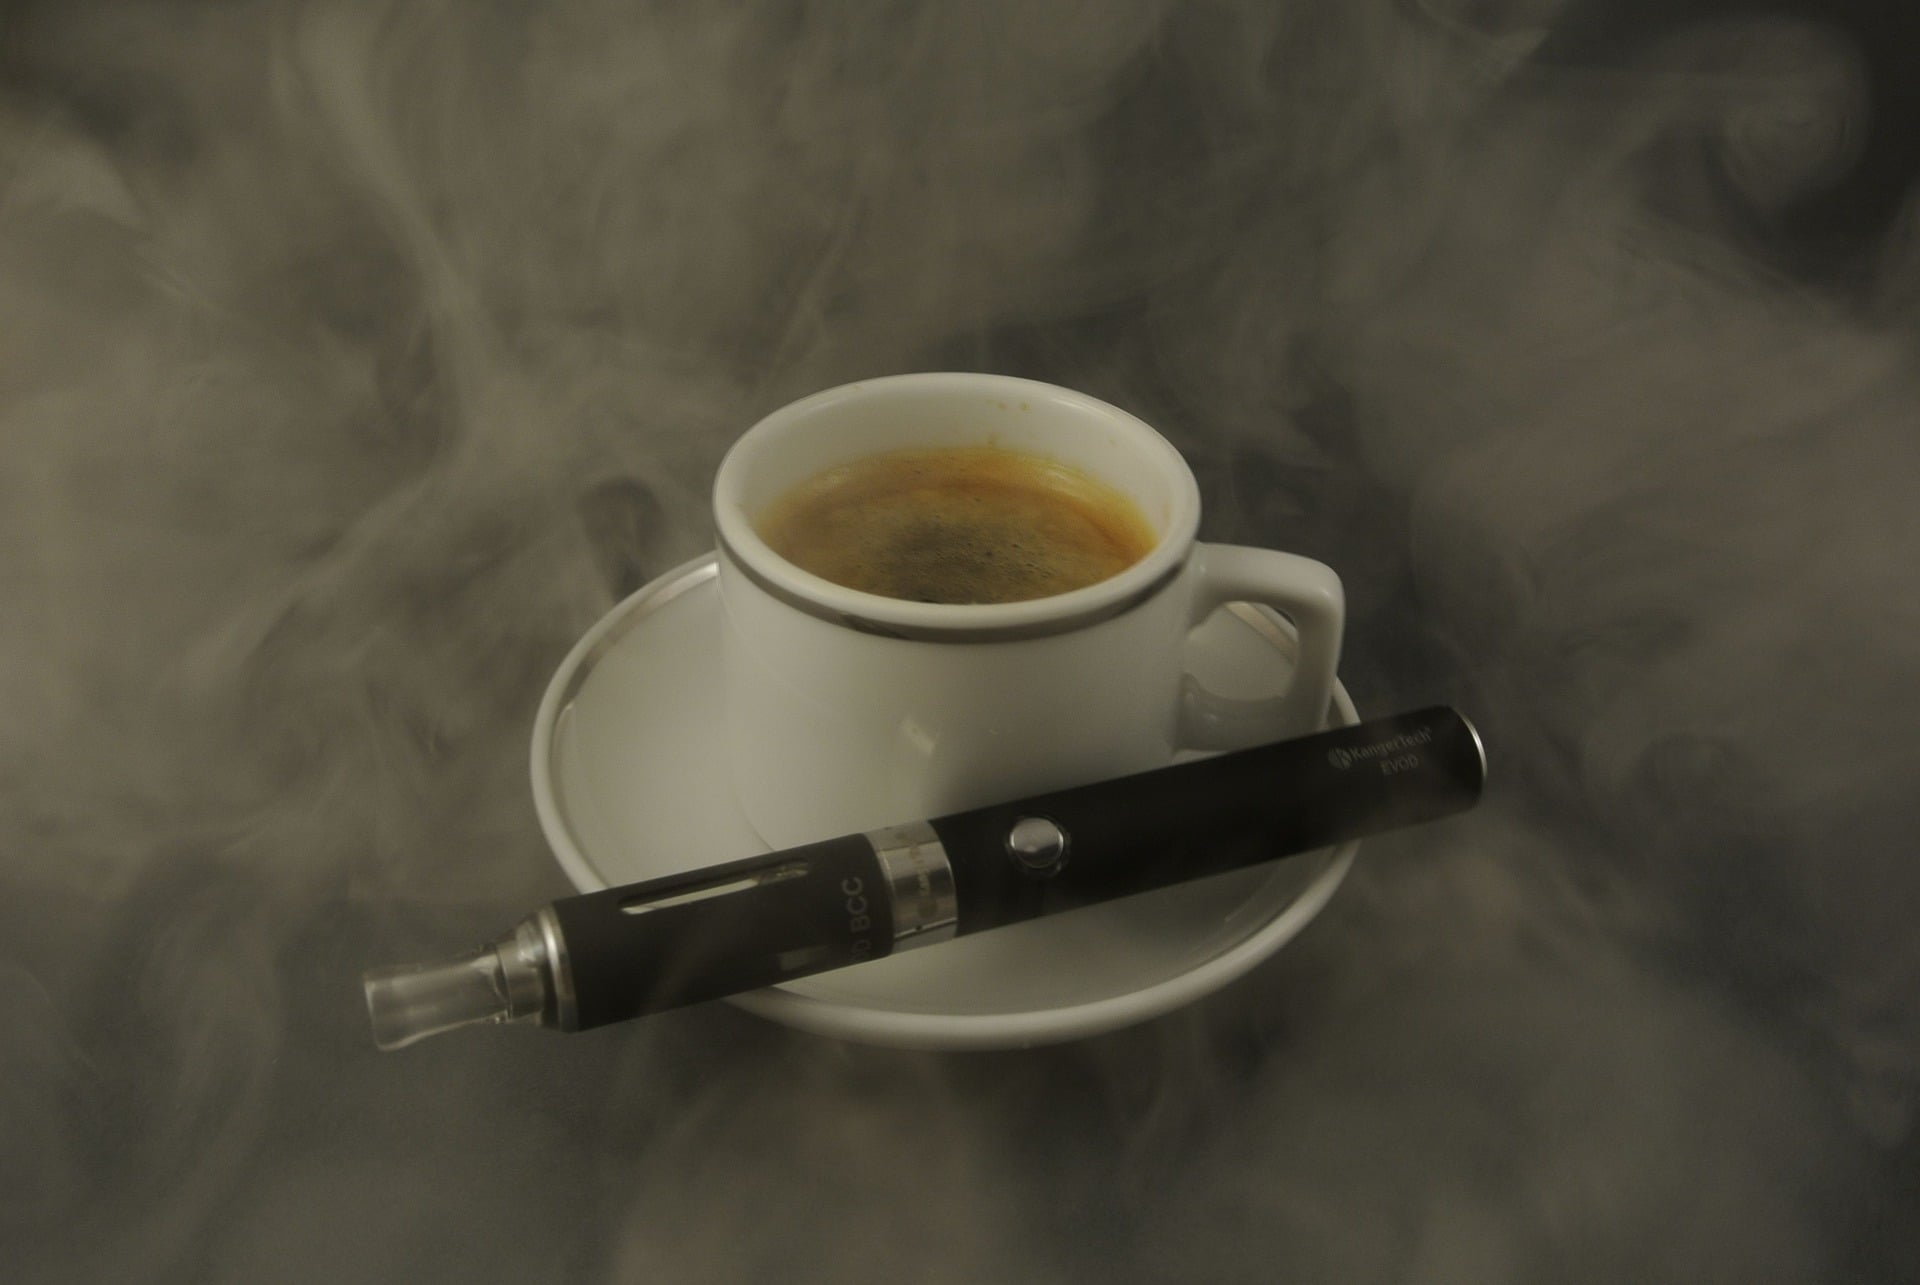 Une tasse de café entourée de vapeur et une cigarette électronique conçue pour aider les fumeurs posée à côté d'elle sur la soucoupe.